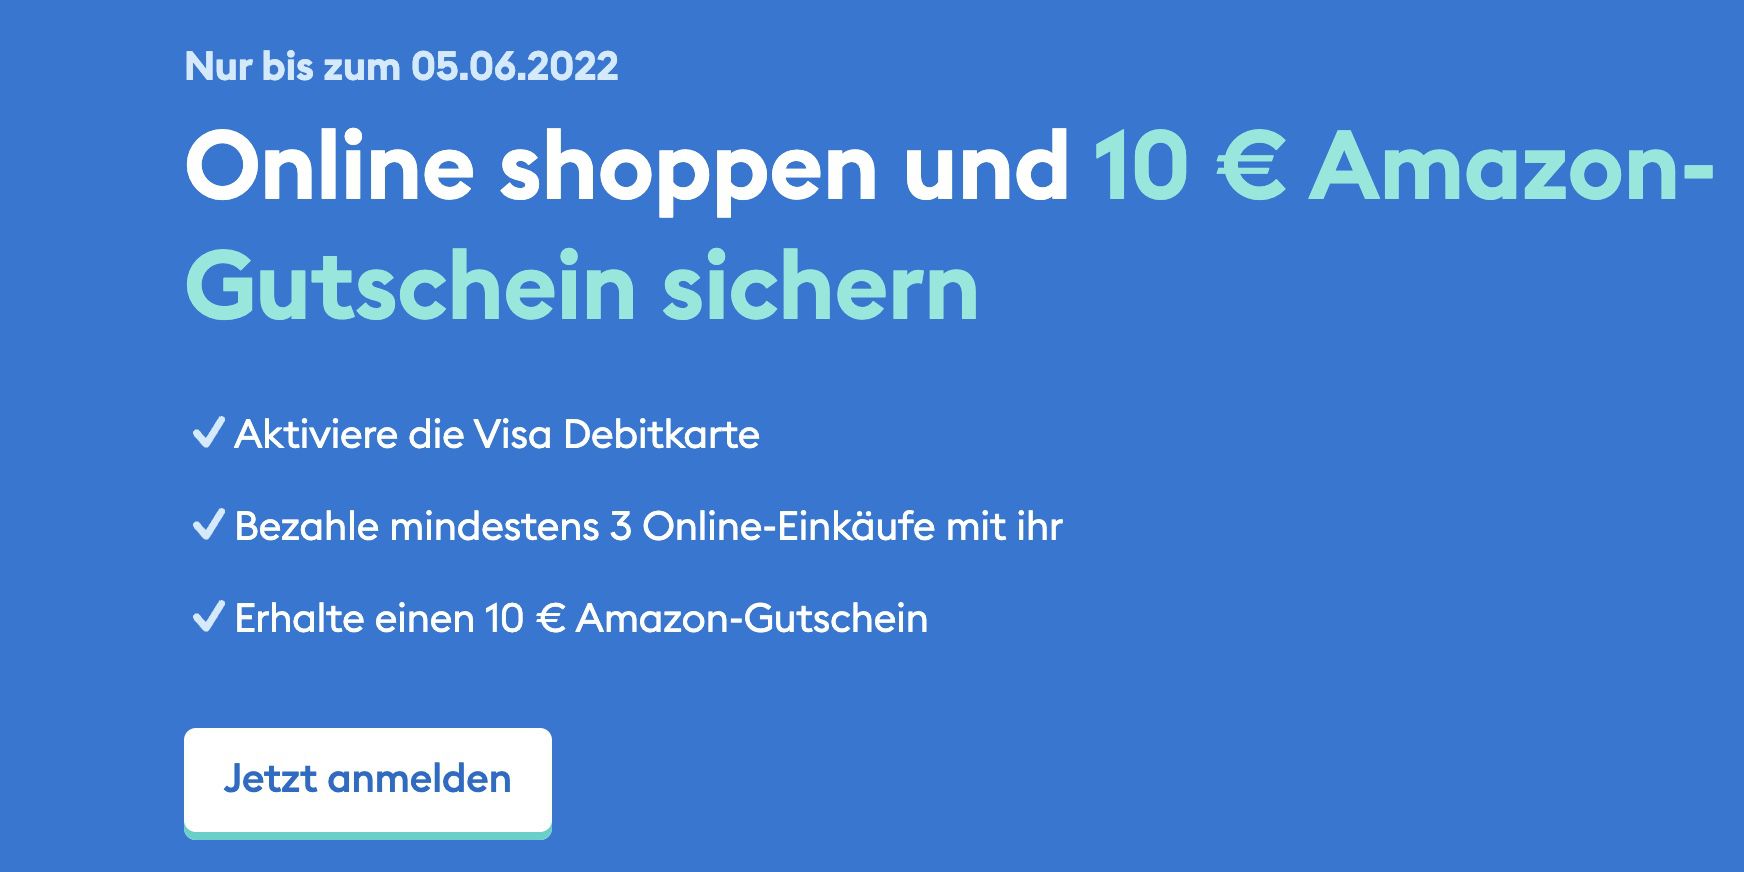 DKB + VISA: 3x Online Einkäufe zahlen und gratis 10€ Amazon Gutschein erhalten